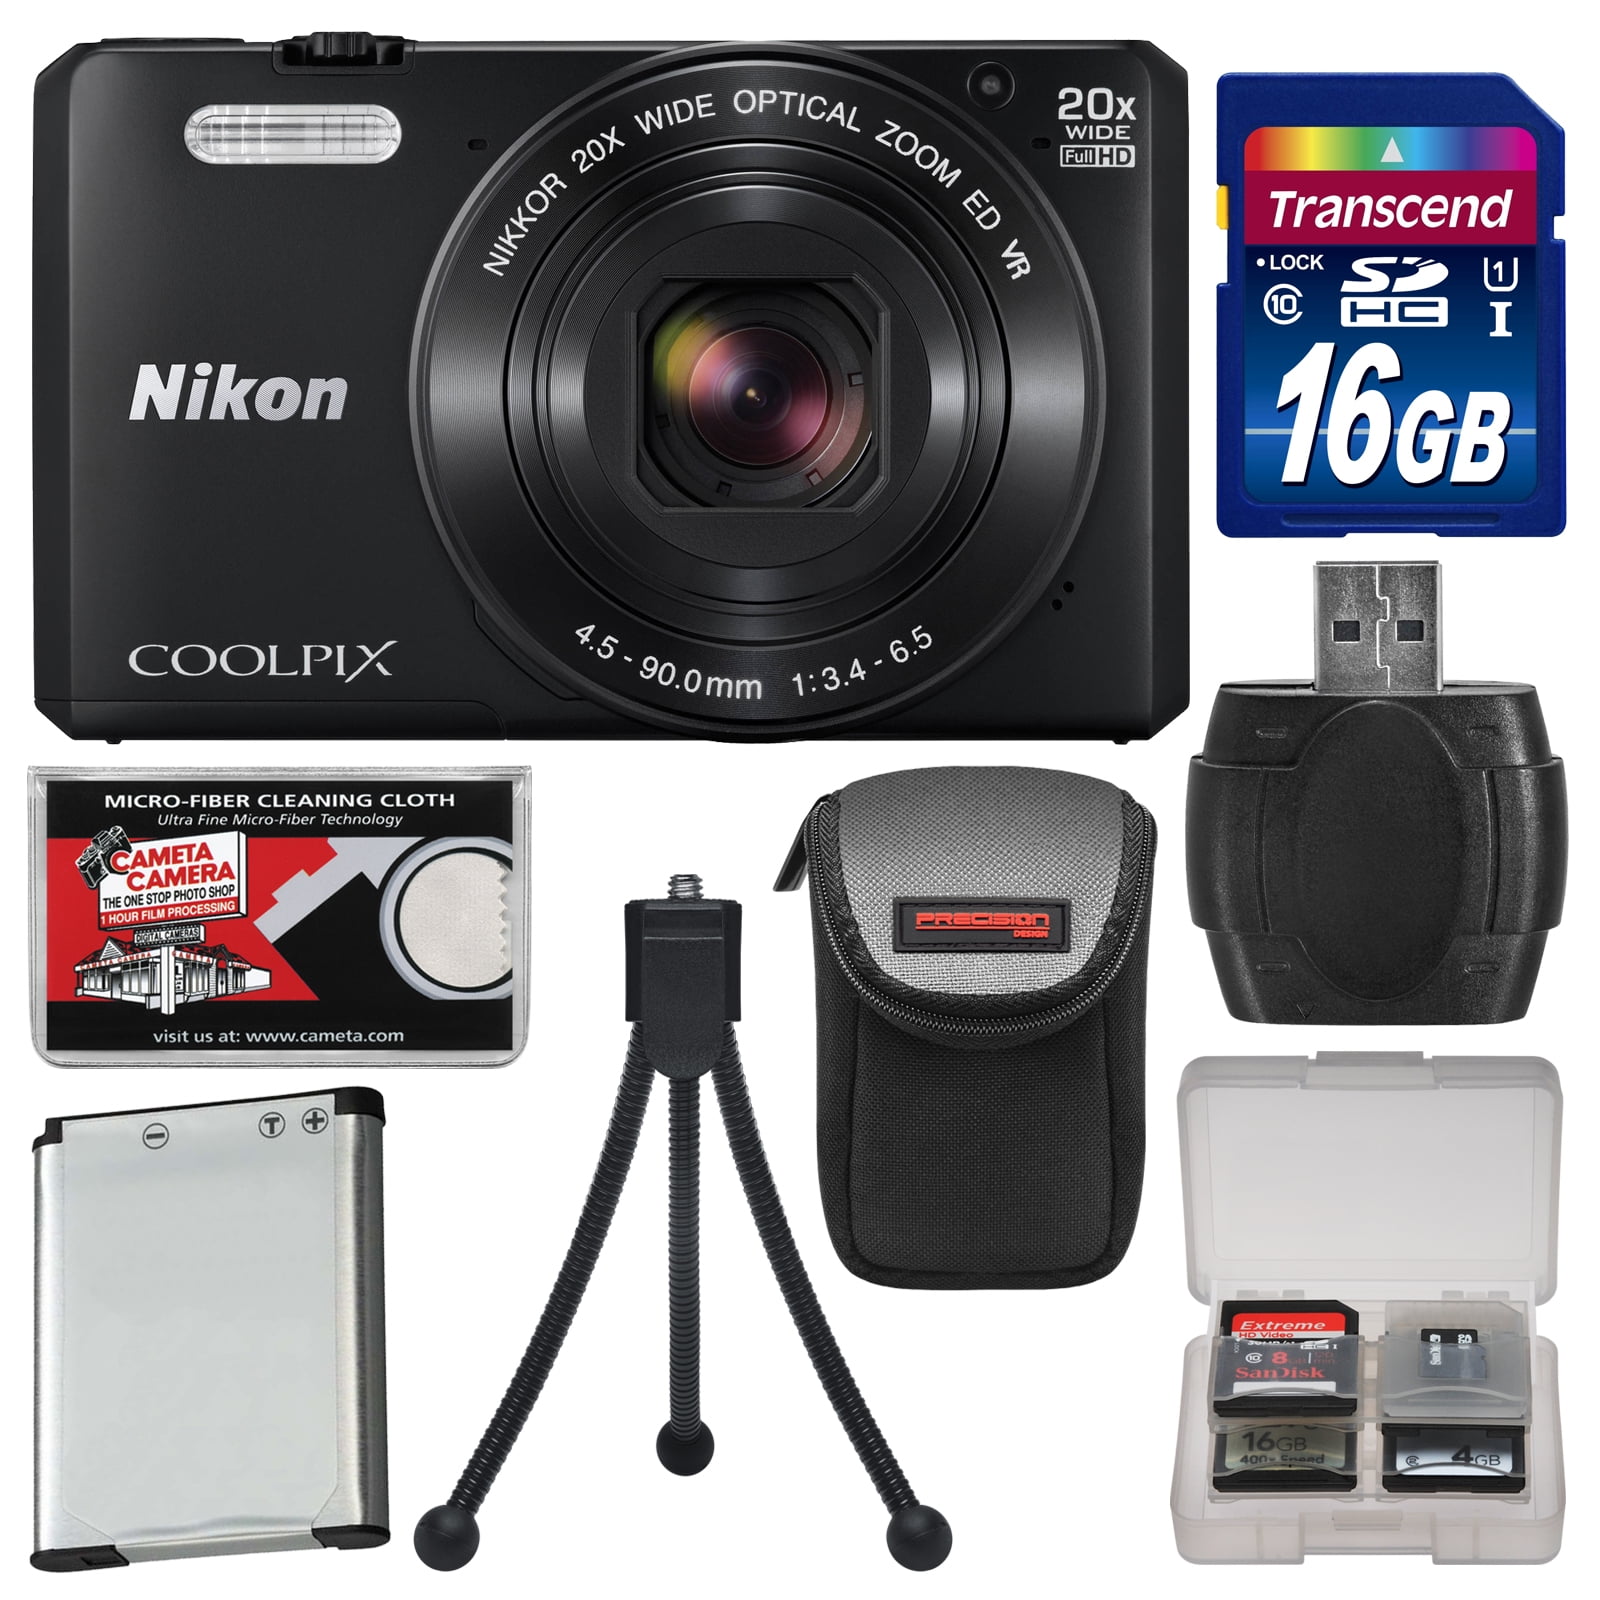 Nikon Coolpix S7000 Wi-Fi Digital Camera (Black) with 16GB Card +